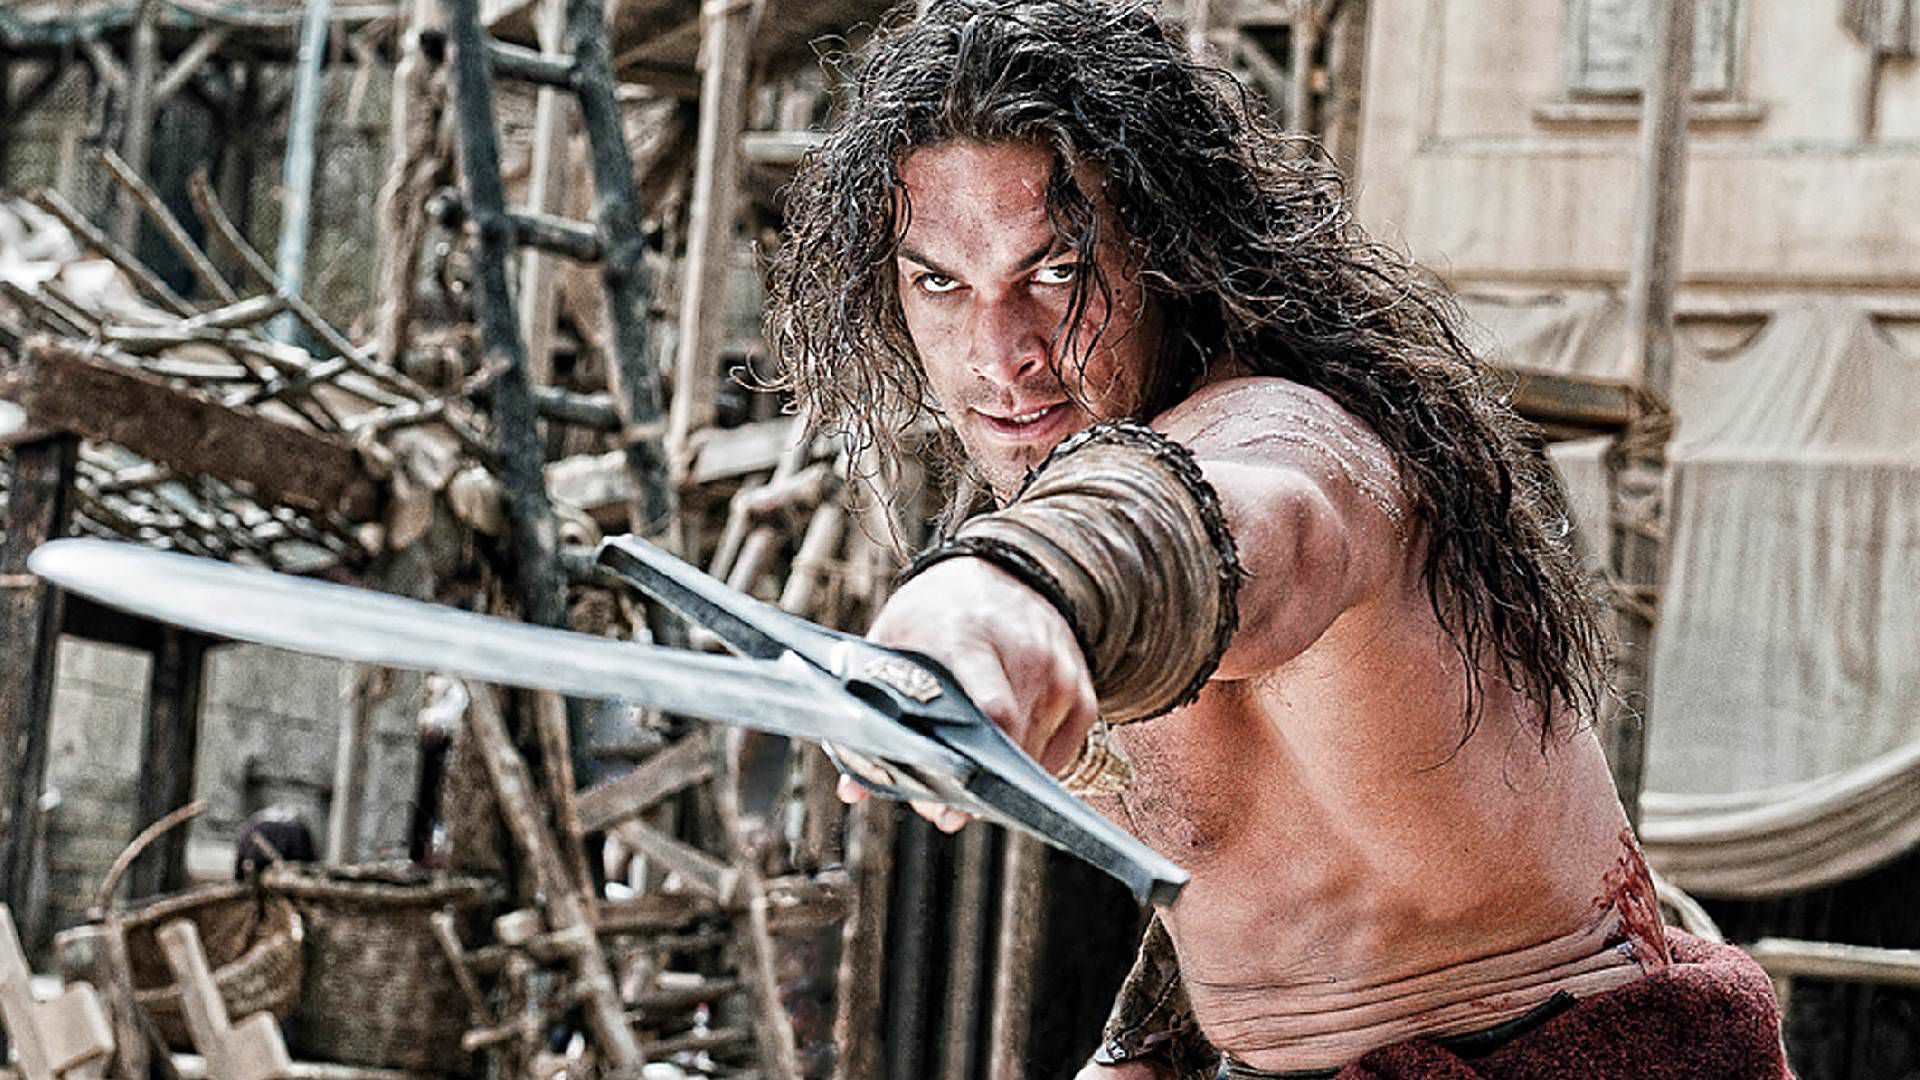 جیسون موموآ در نقش کونان بربر در حال مبارزه در فیلم Conan the Barbarian